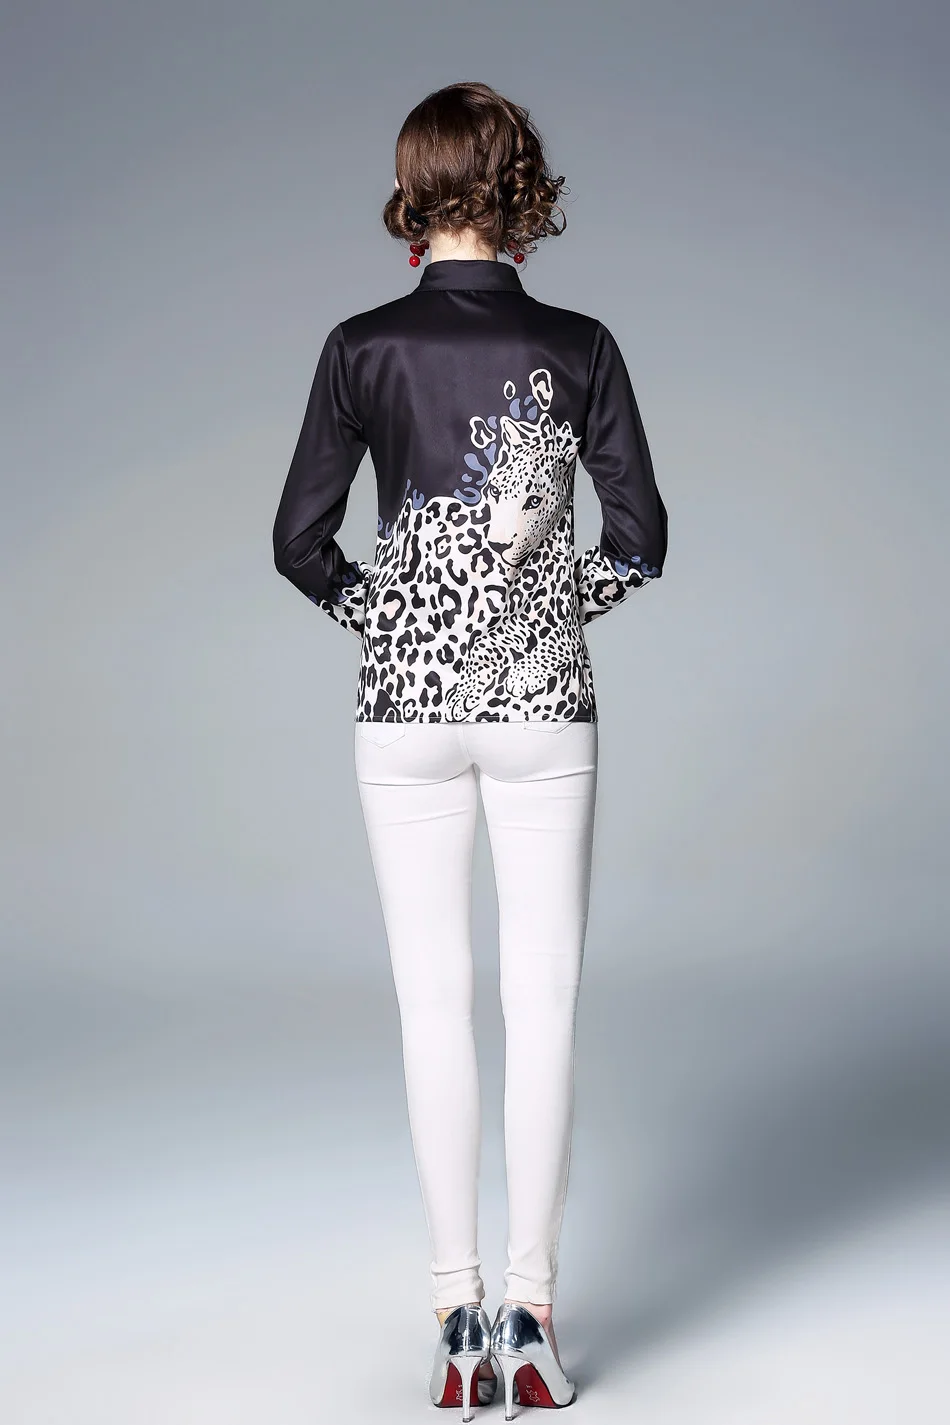 H Han queen элегантный топ с принтом для женщин Новая мода Широкие рубашки с отложным воротником со стойкой леопардовая офисная одежда OL блузки Femininas